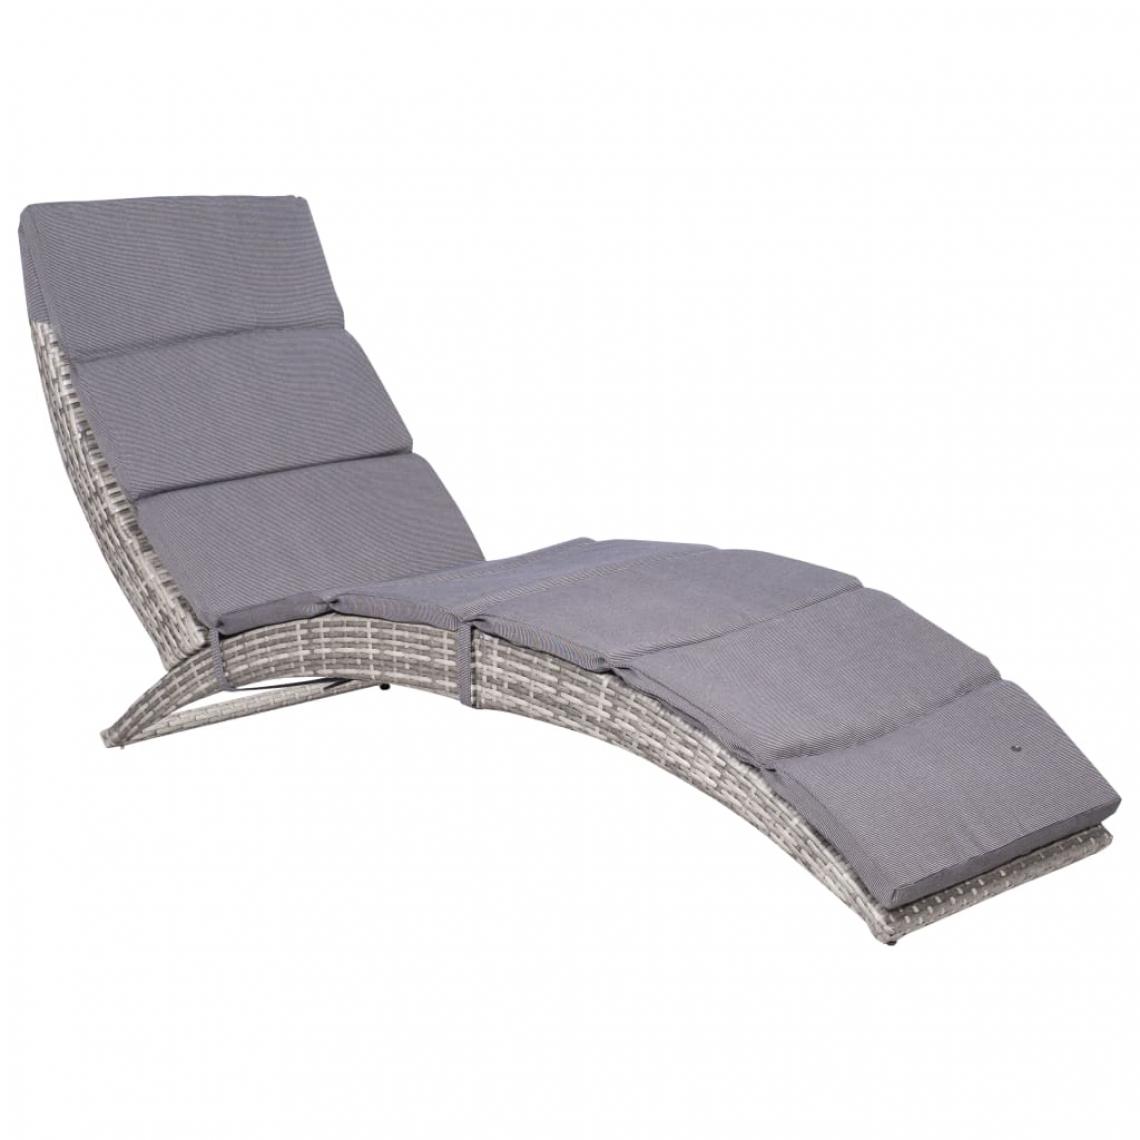 Chunhelife - Chaise longue pliable avec coussin Résine tressée Gris - Transats, chaises longues